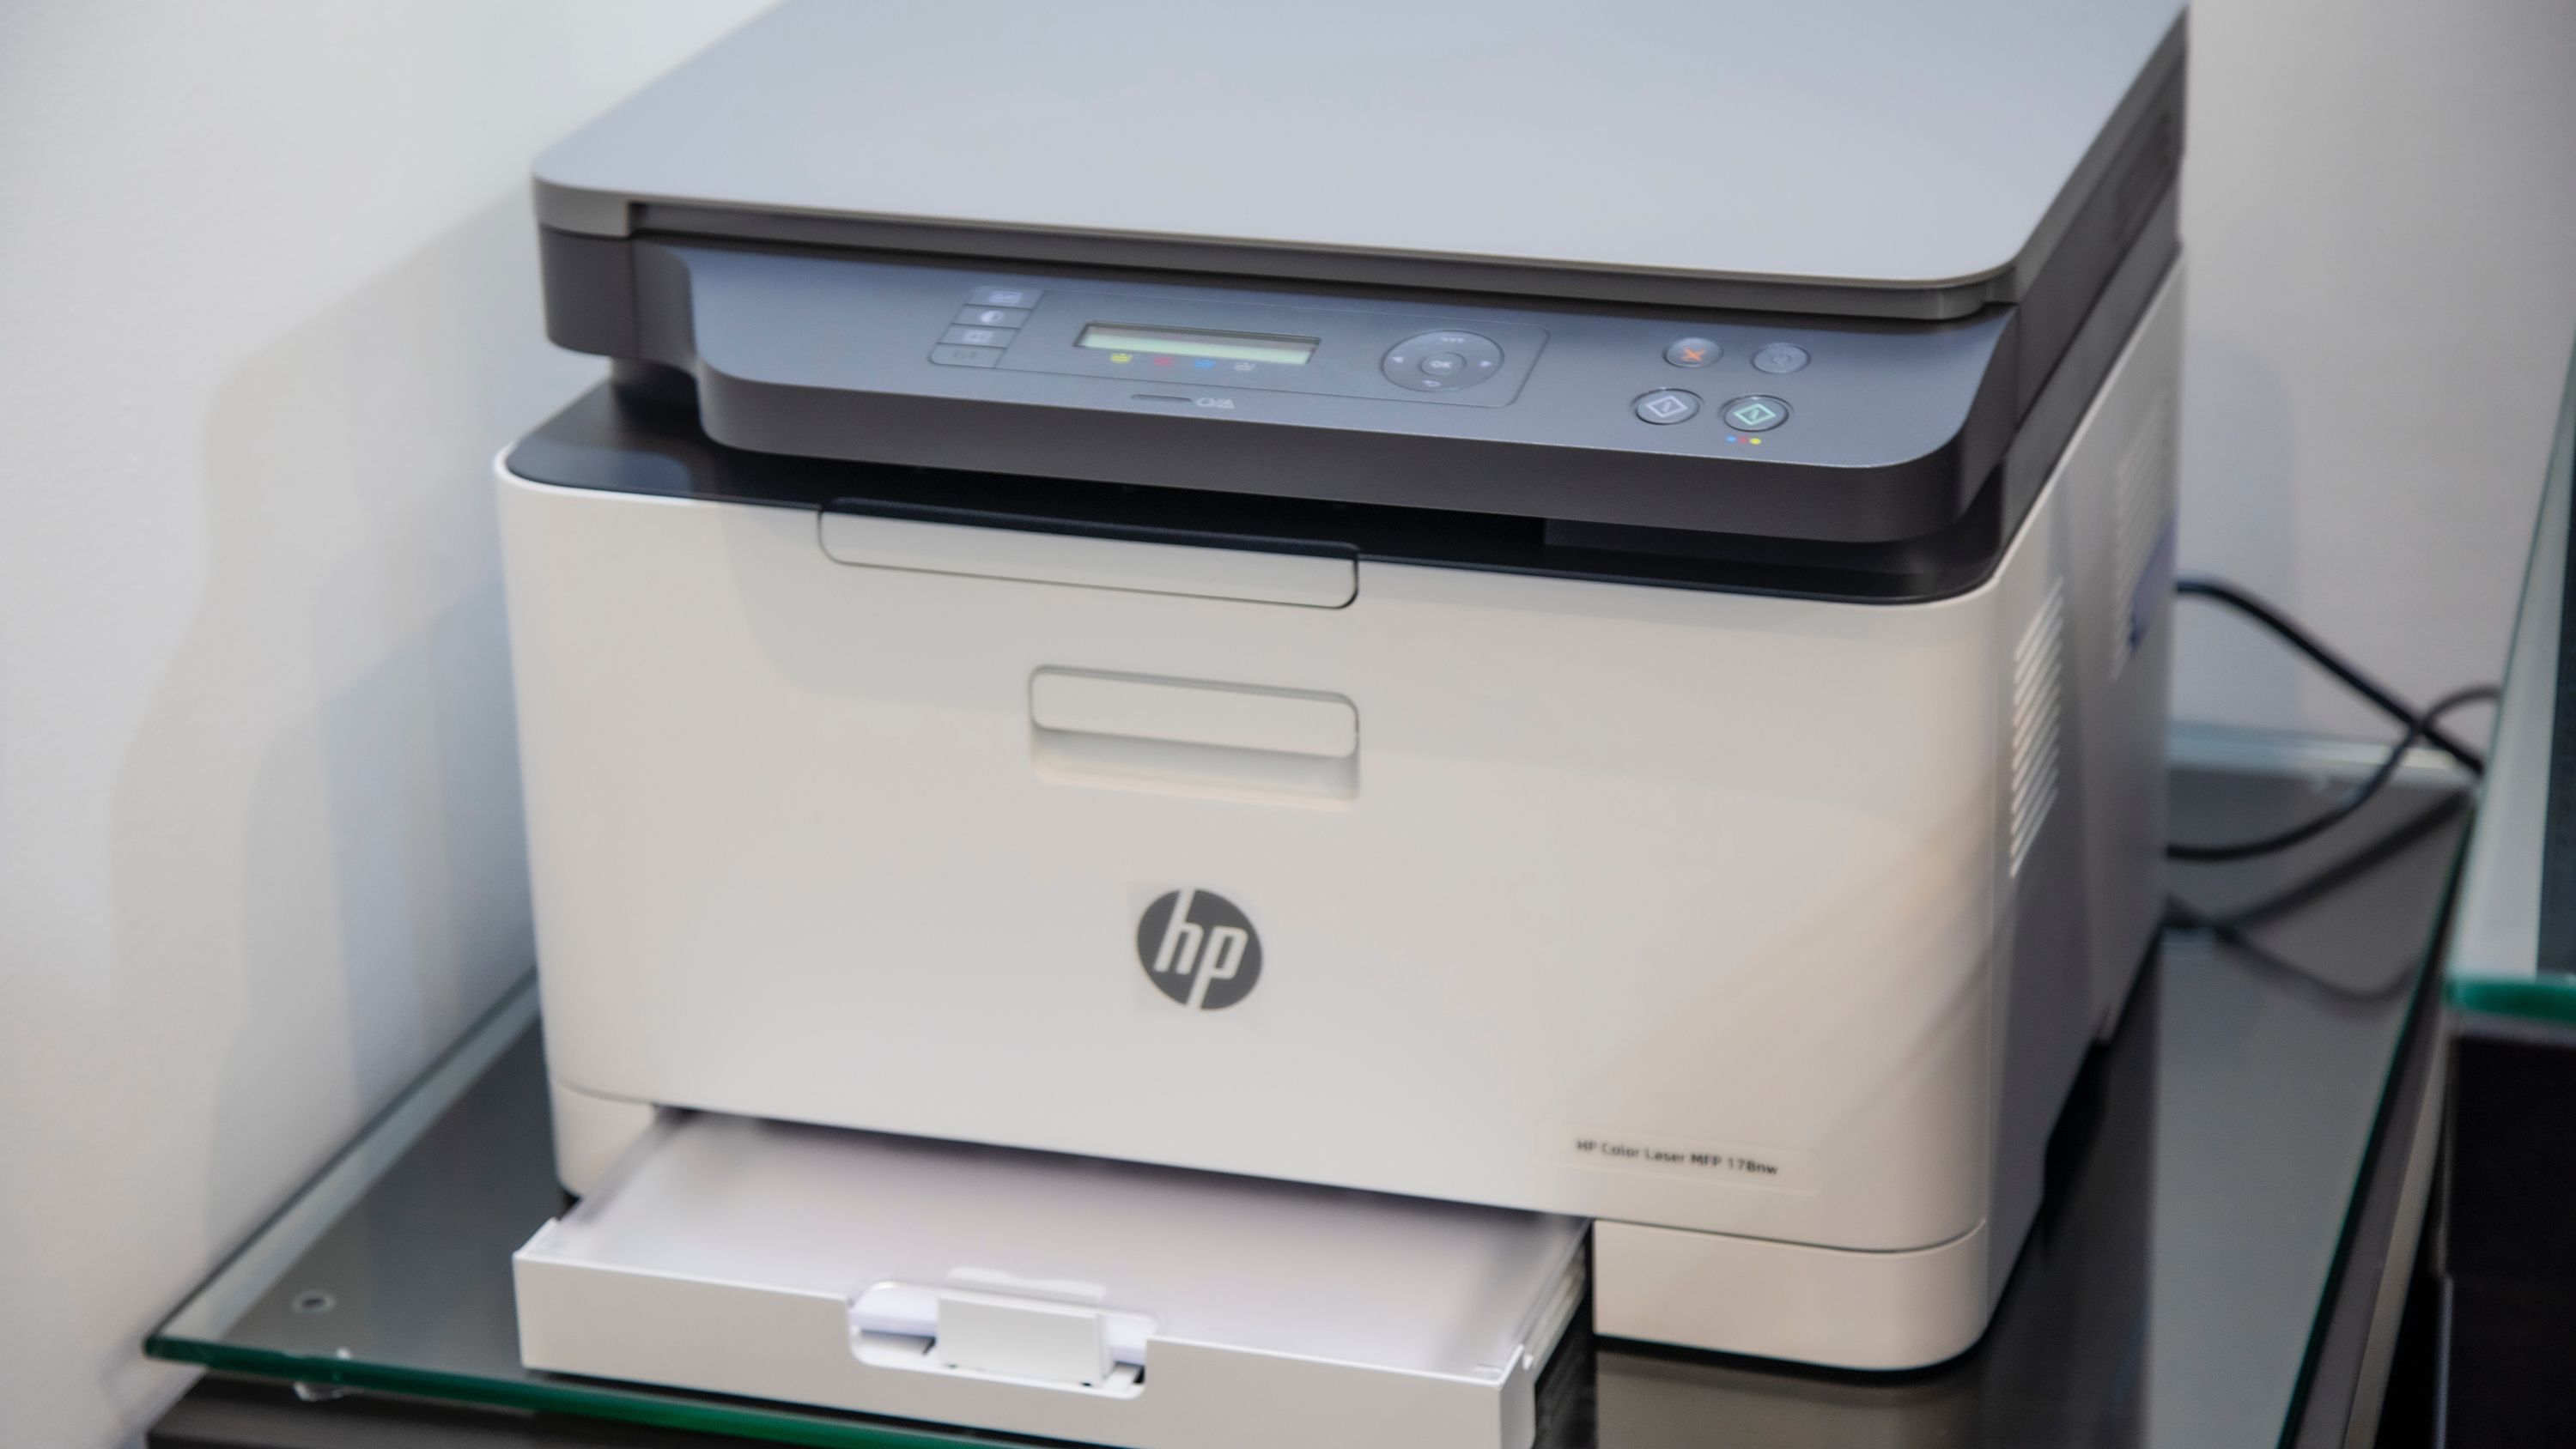 Impressora: como imprimir suas fotos em casa